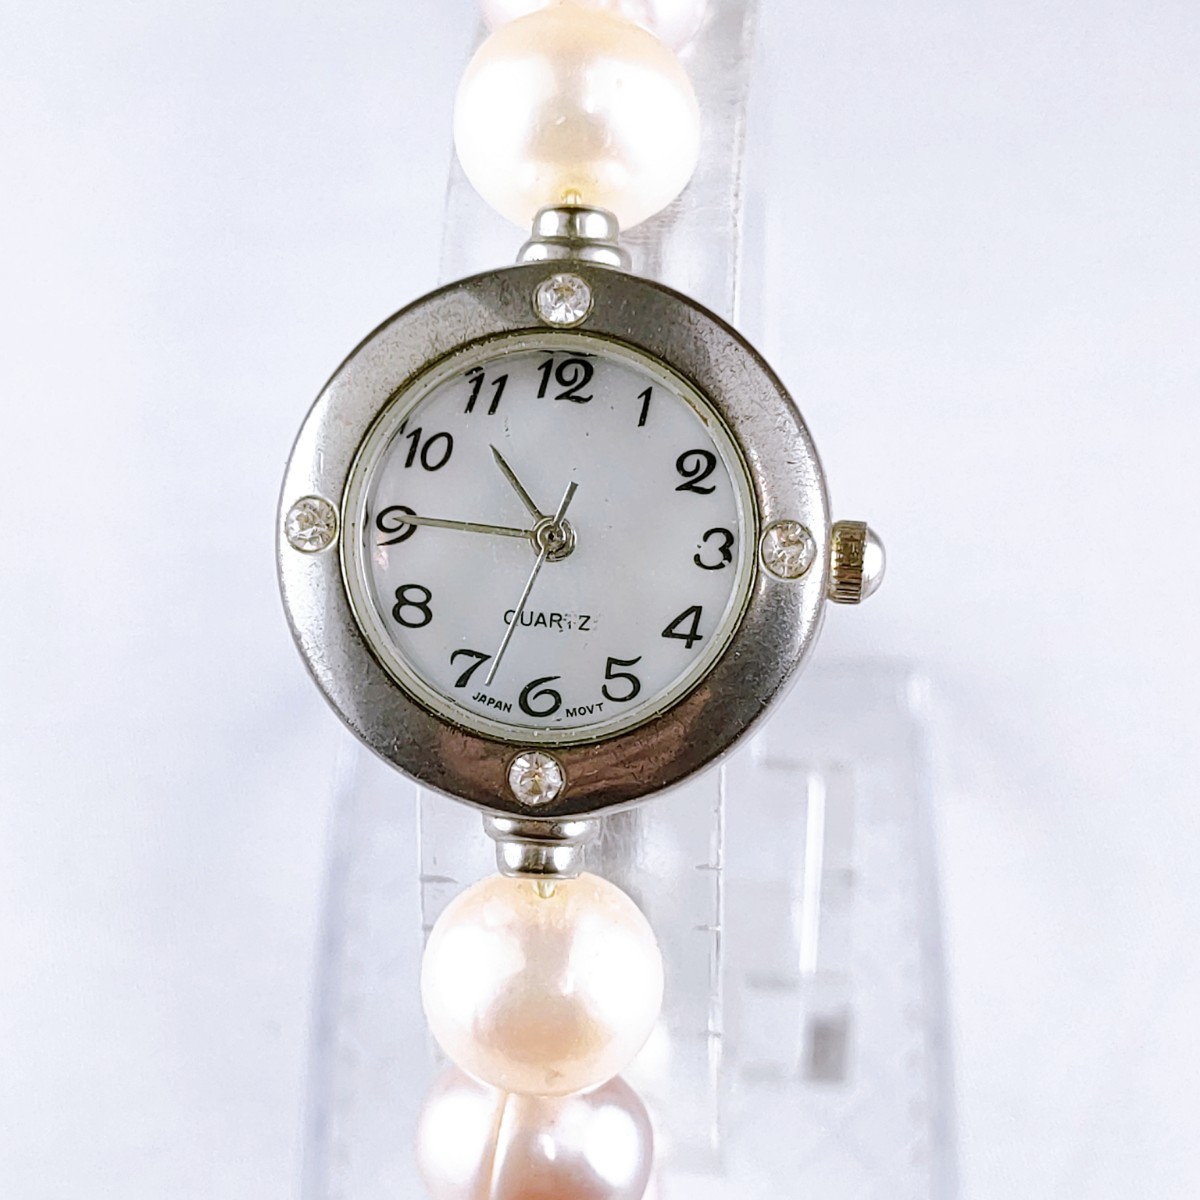 バングル 腕時計 ブレス時計 クウォーツ パールビーズ 時計 ヴィンテージ 3針 シェル文字盤 アクセ アクセサリー アンティーク レトロの画像1